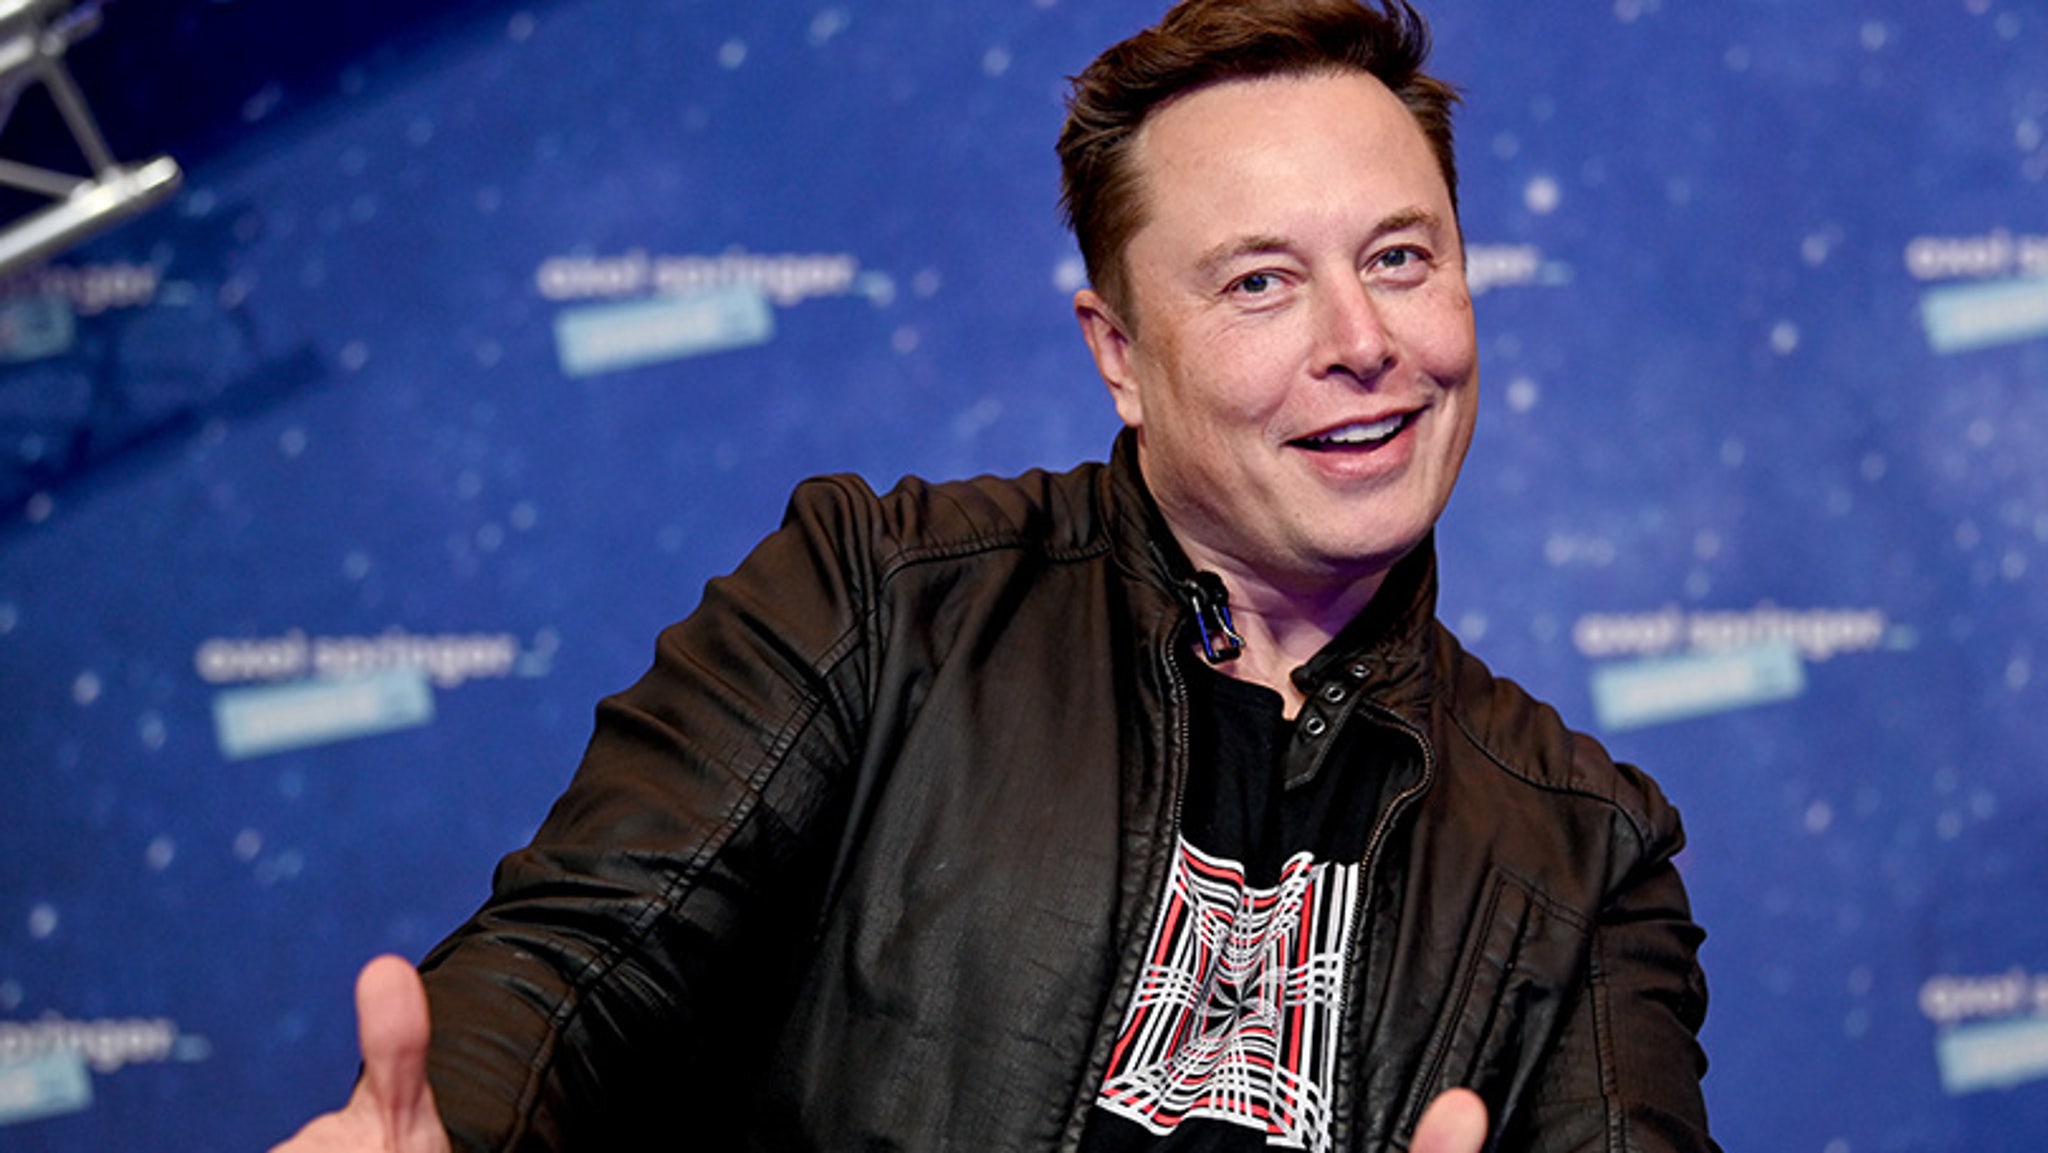 El elenco de SNL, Elon Musk, no está contento con el hosting